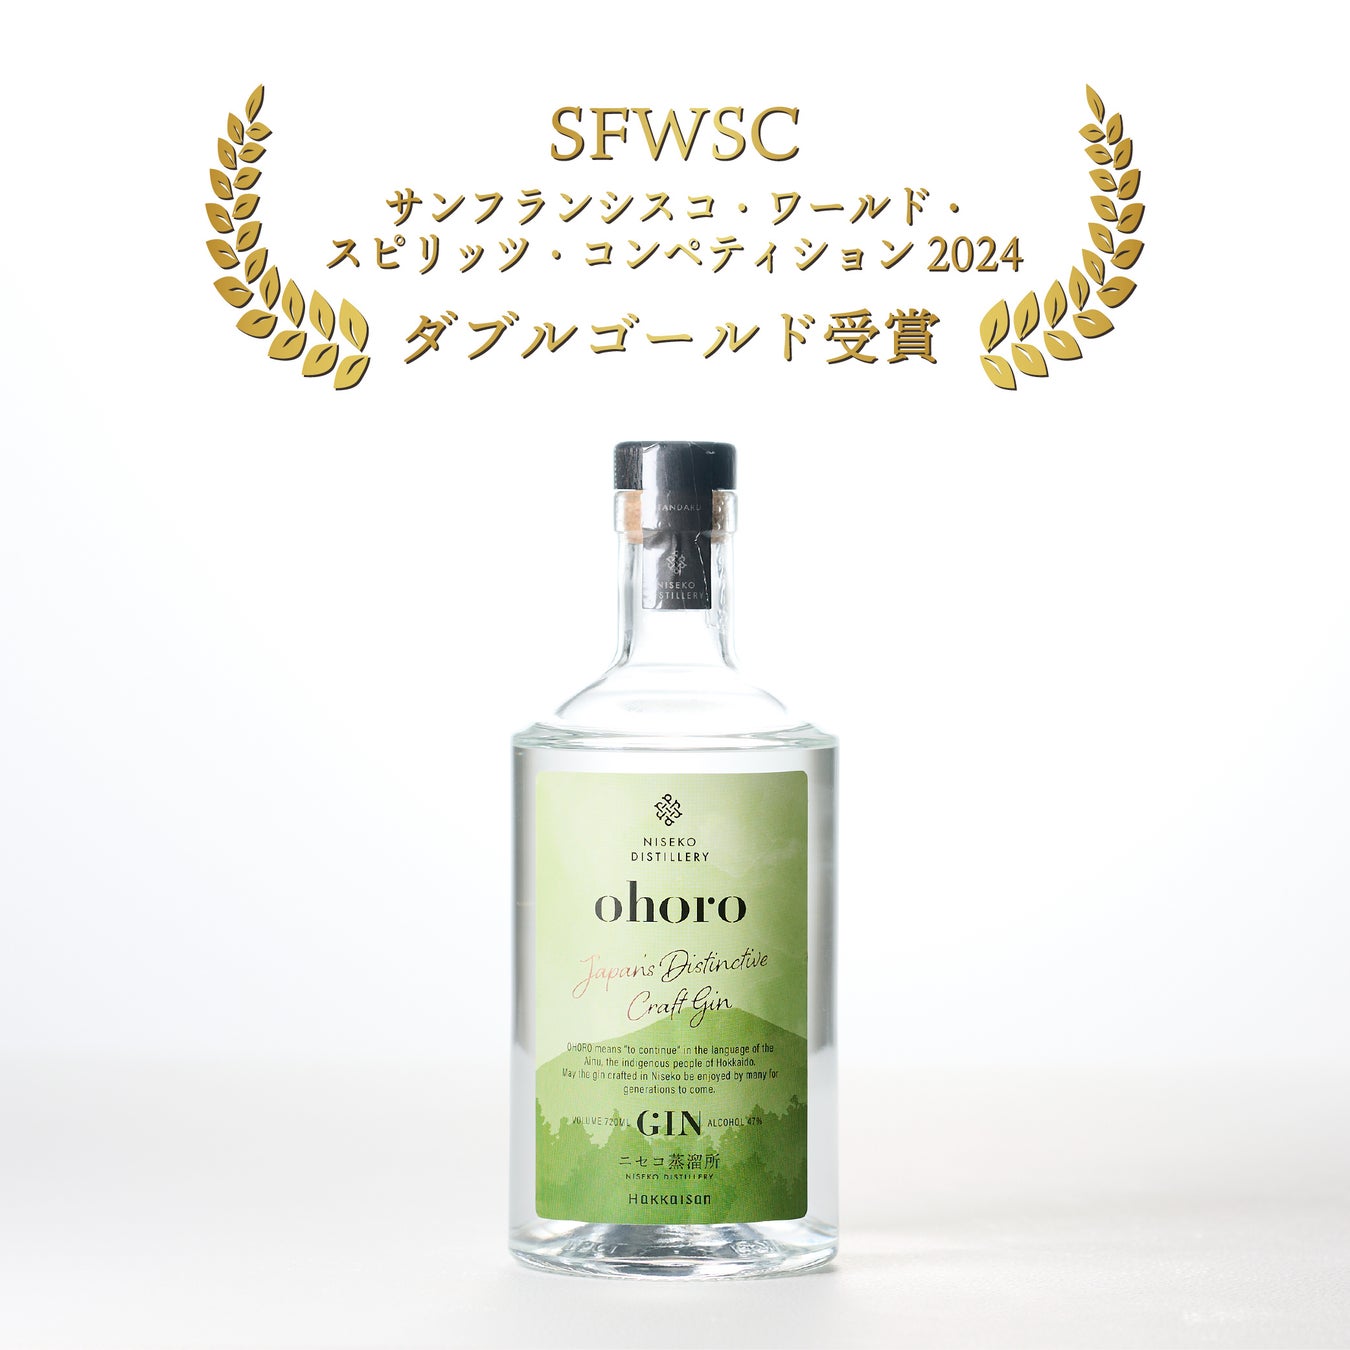 国際的な酒類品評会「SFWSC2024」にて本格梅酒The CHOYAシリーズから「Extra Years」、「FROM THE BARREL 2014」、「EXTRA FRUIT」が最高金賞を受賞